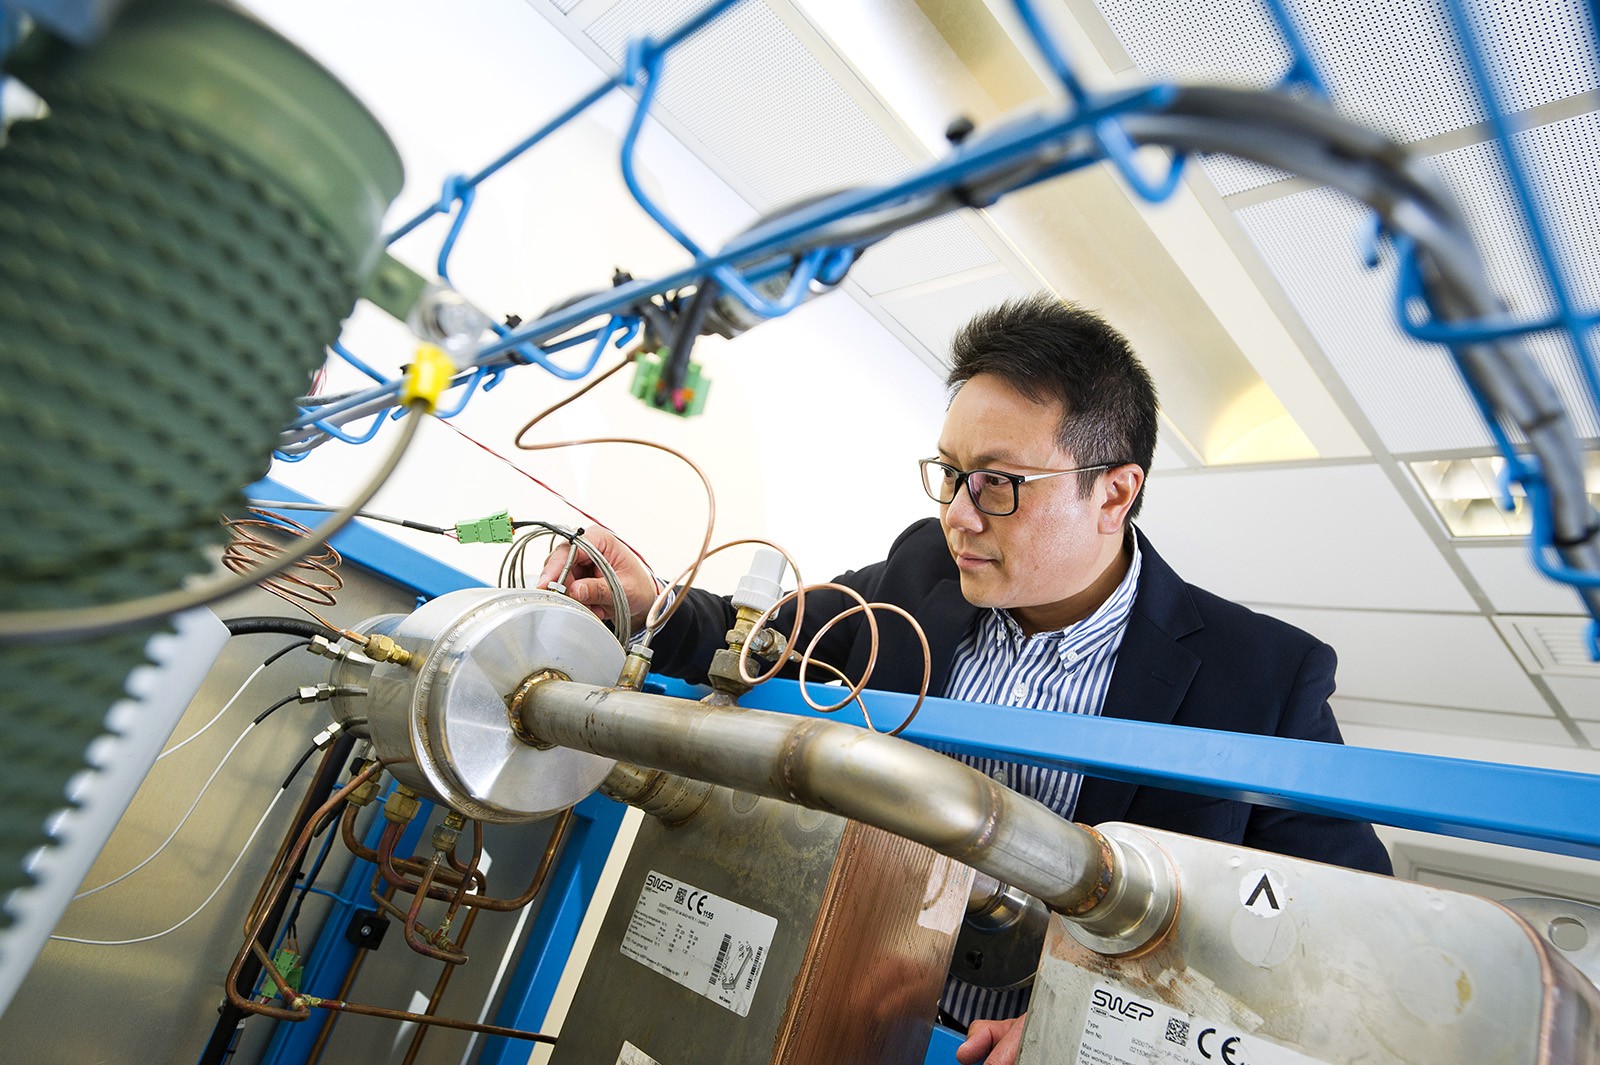 梁國熙教授研究將空調排放的熱能回收並轉化為電能。